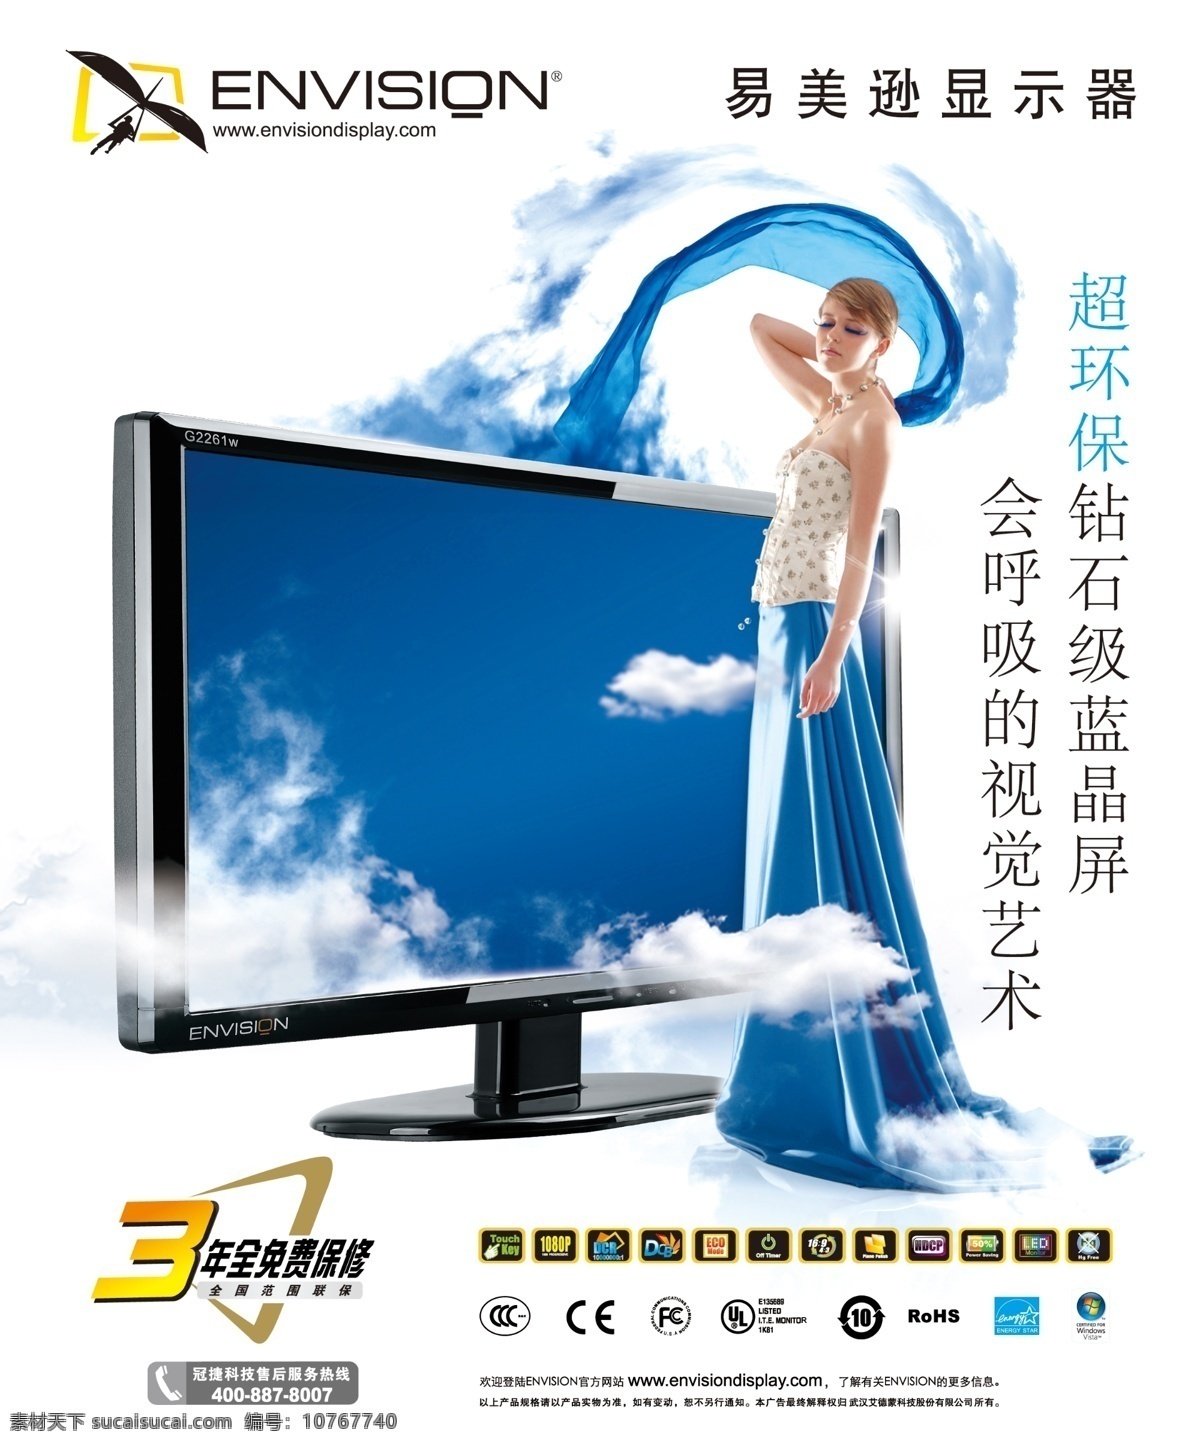 易美逊显示器 g2461 海报 天空 白云 液晶显示器 女孩 蓝色 广告设计模板 源文件